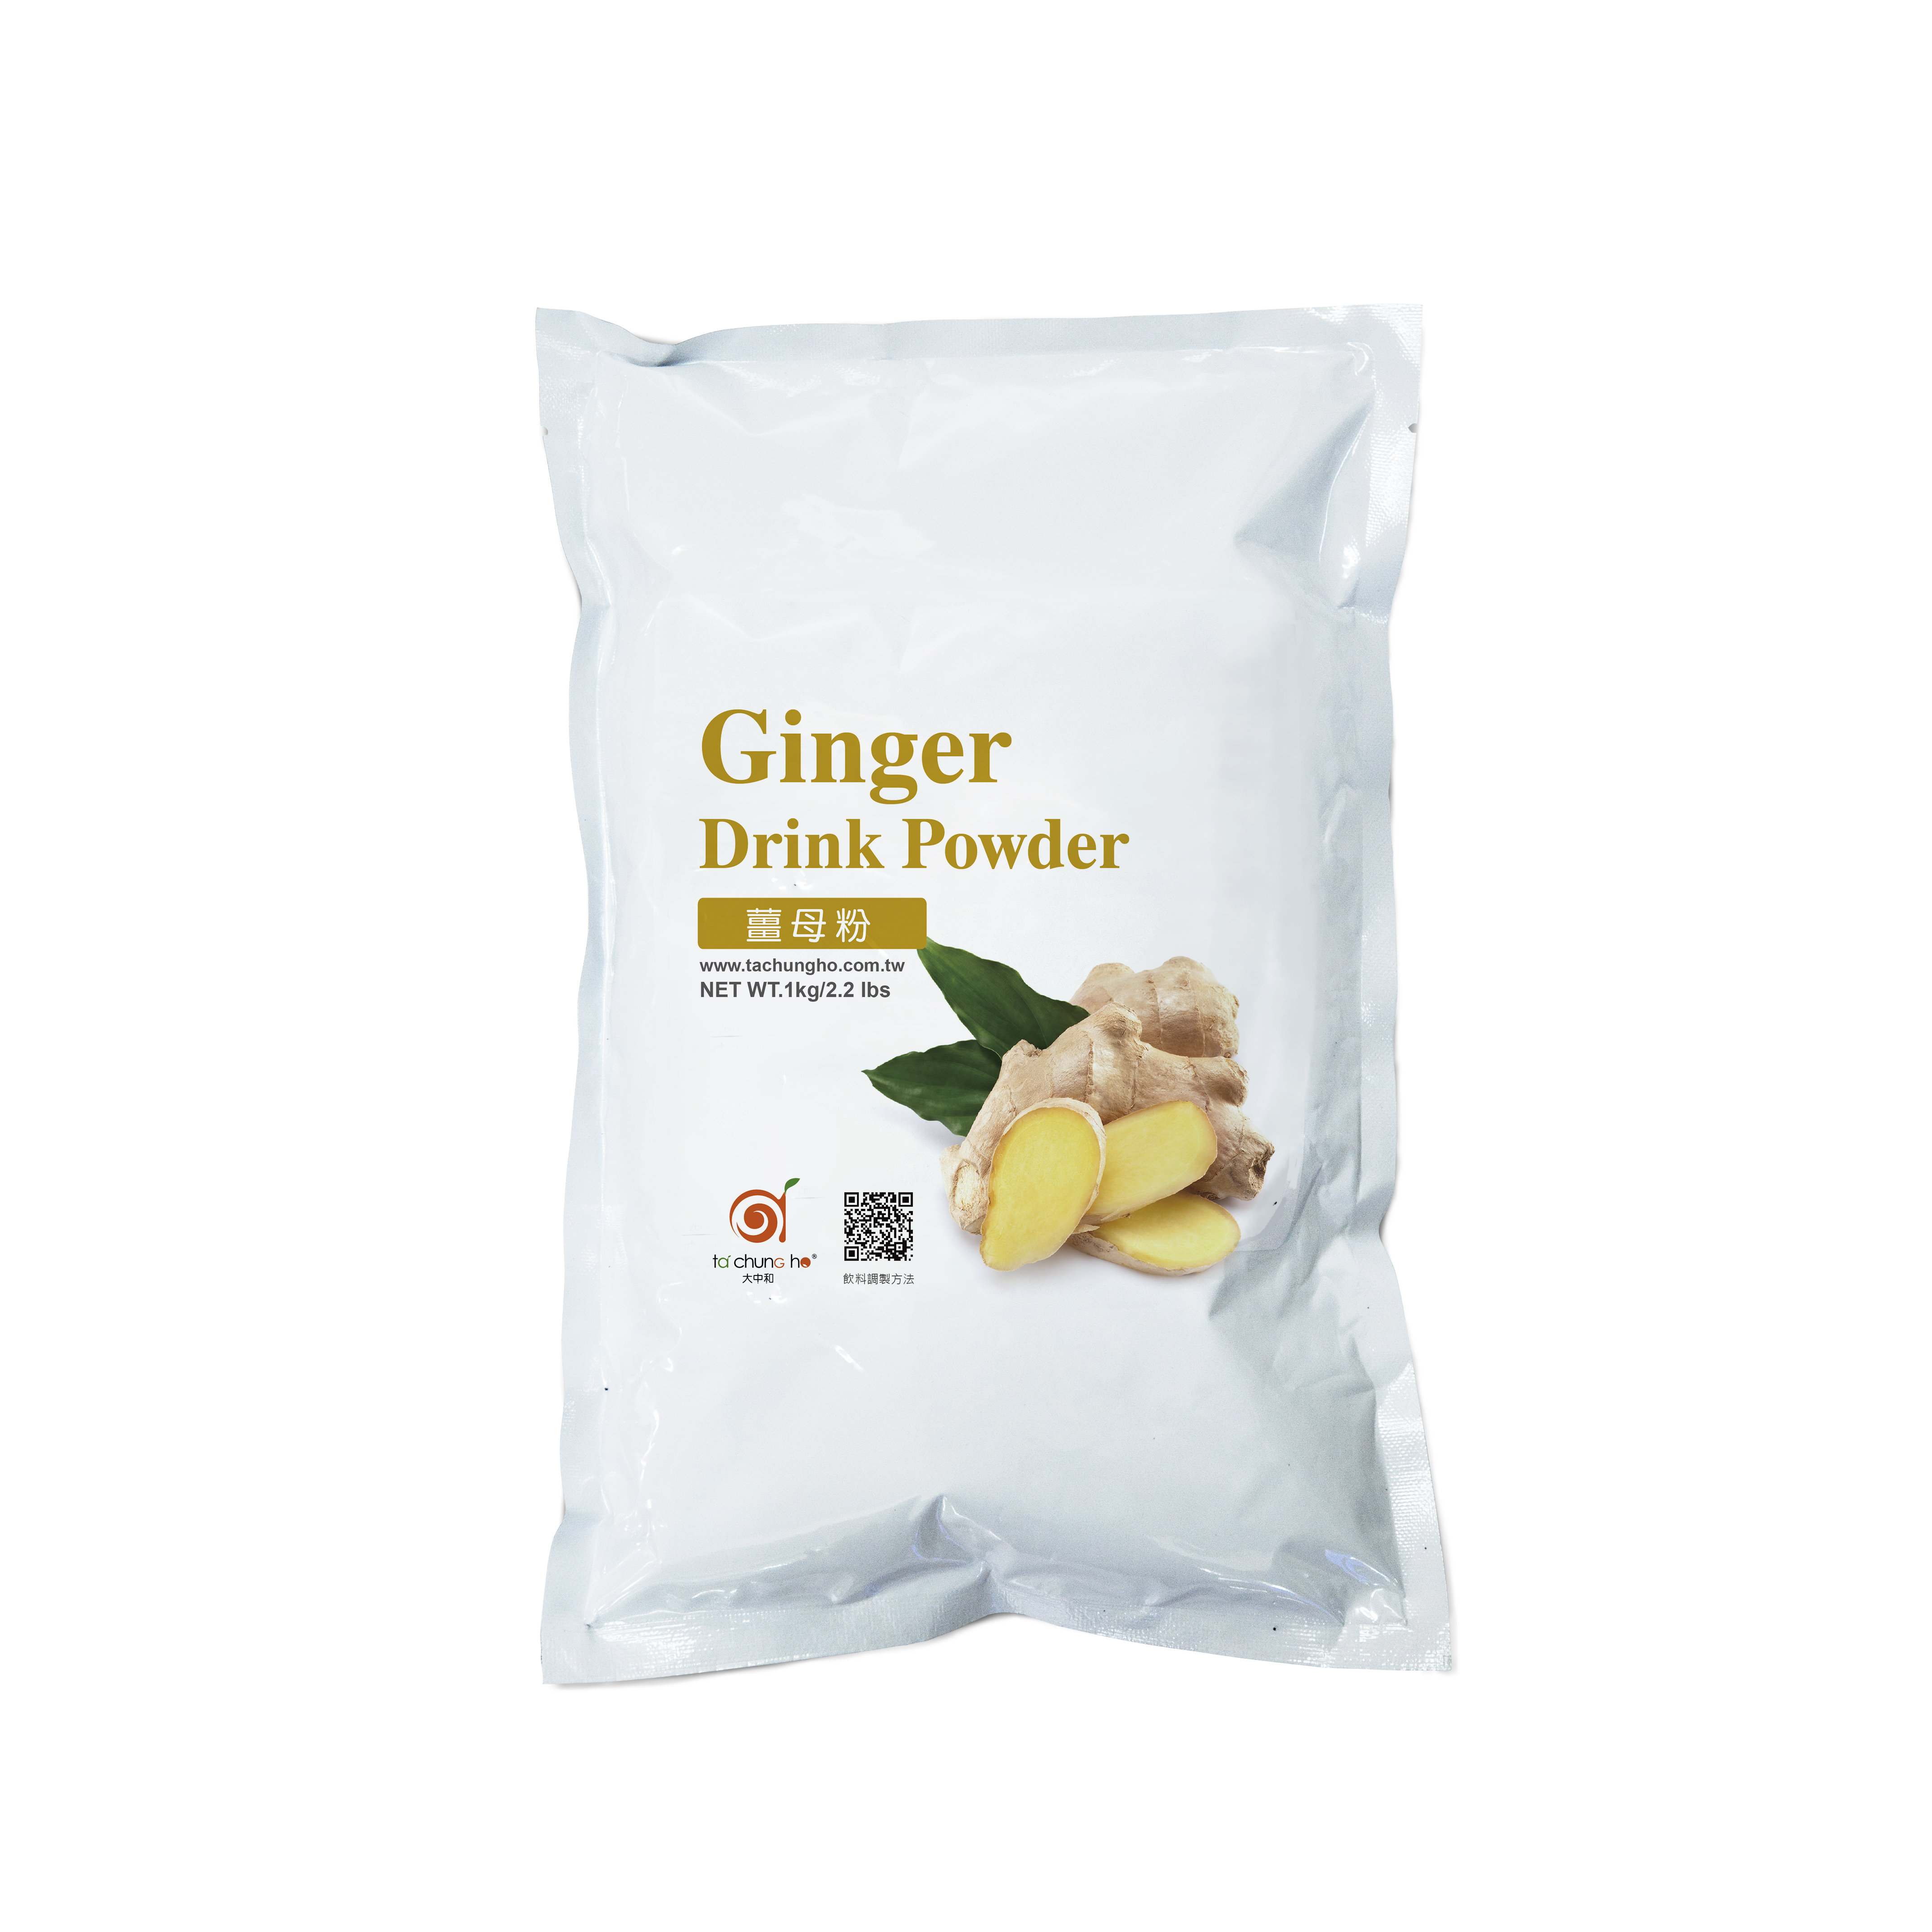 Ginger Drink Powder